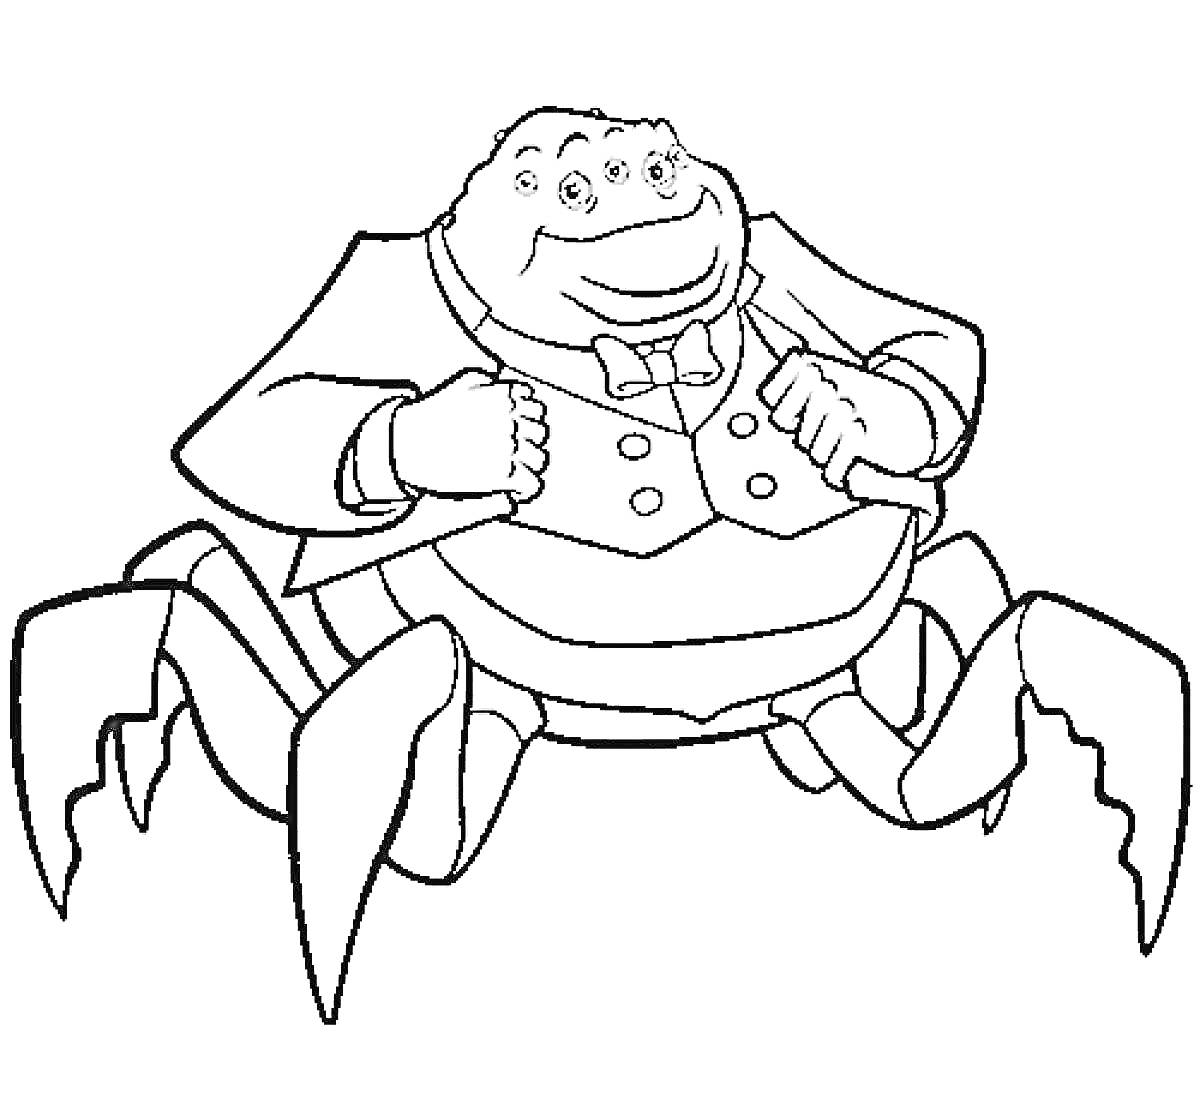 Человекоподобный монстр-паук в костюме с бантом и шестью лапами